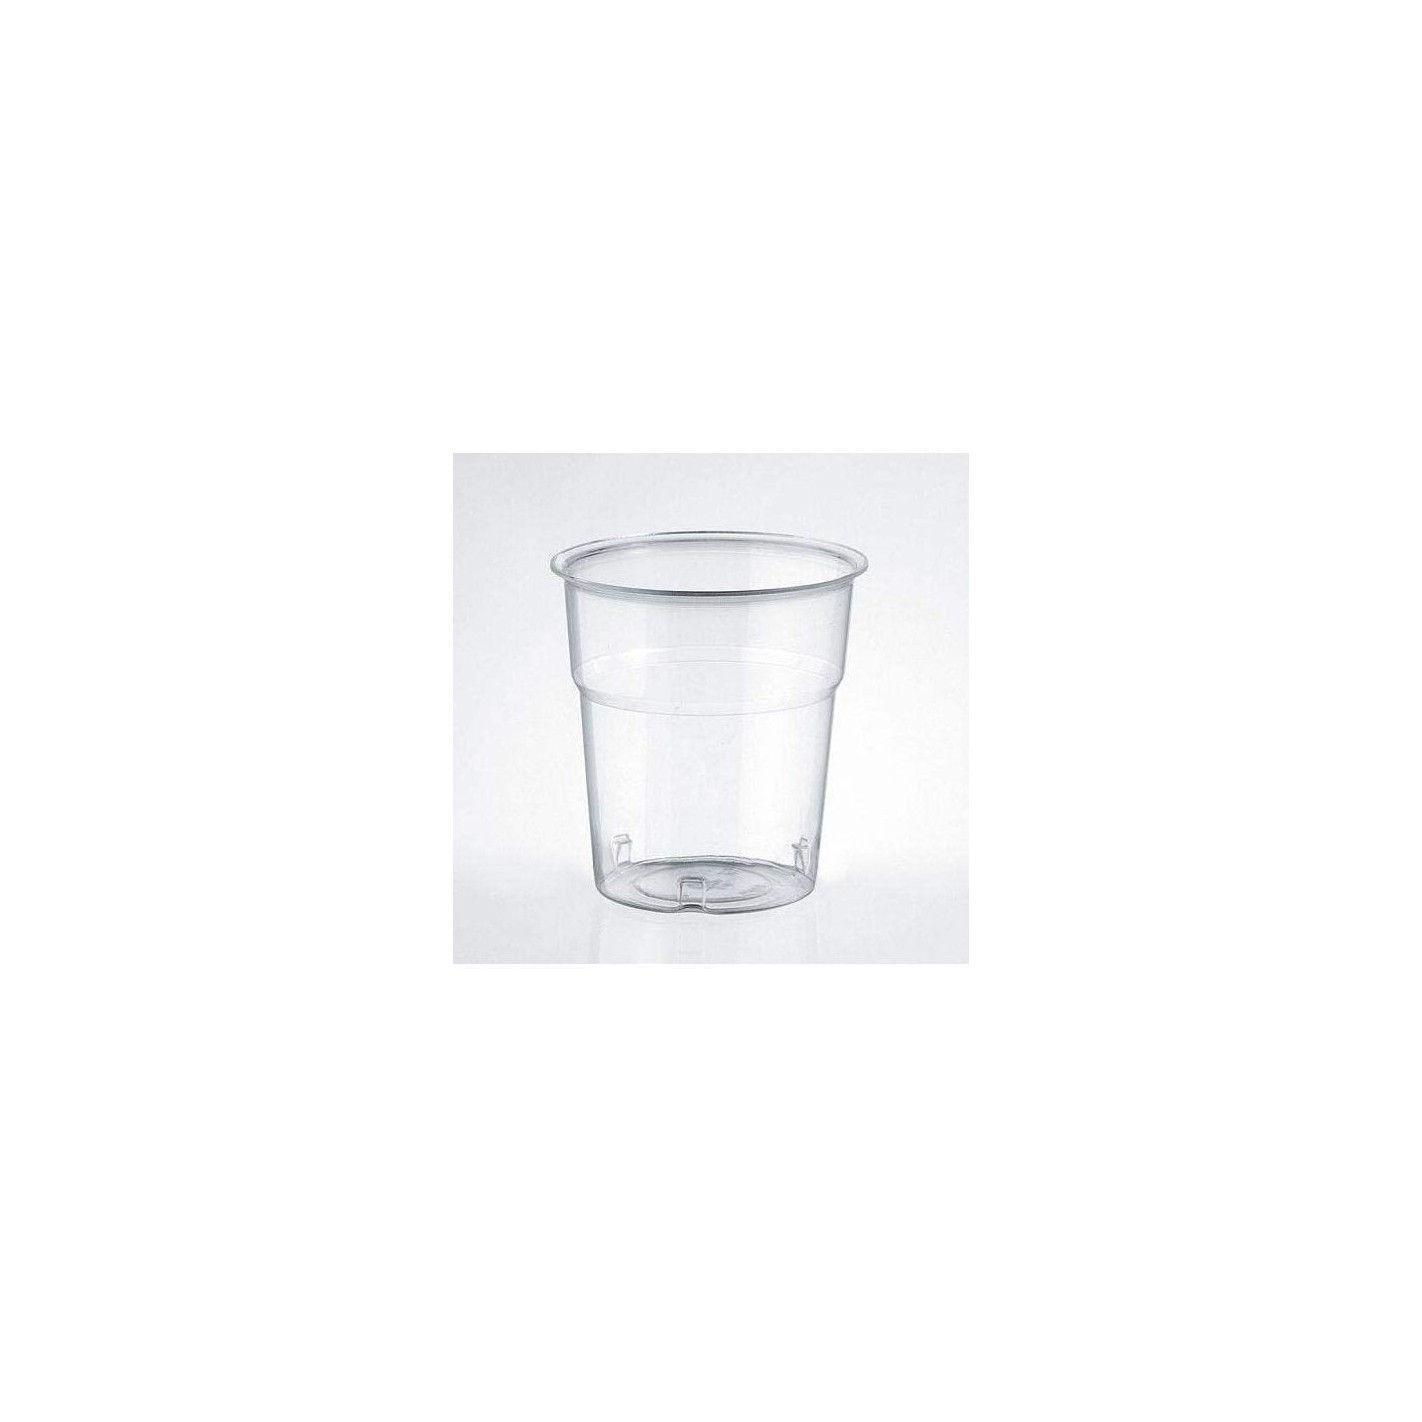 Bicchieri in Plastica Rigida modello kristall ml 100 confezione da 50 pezzi